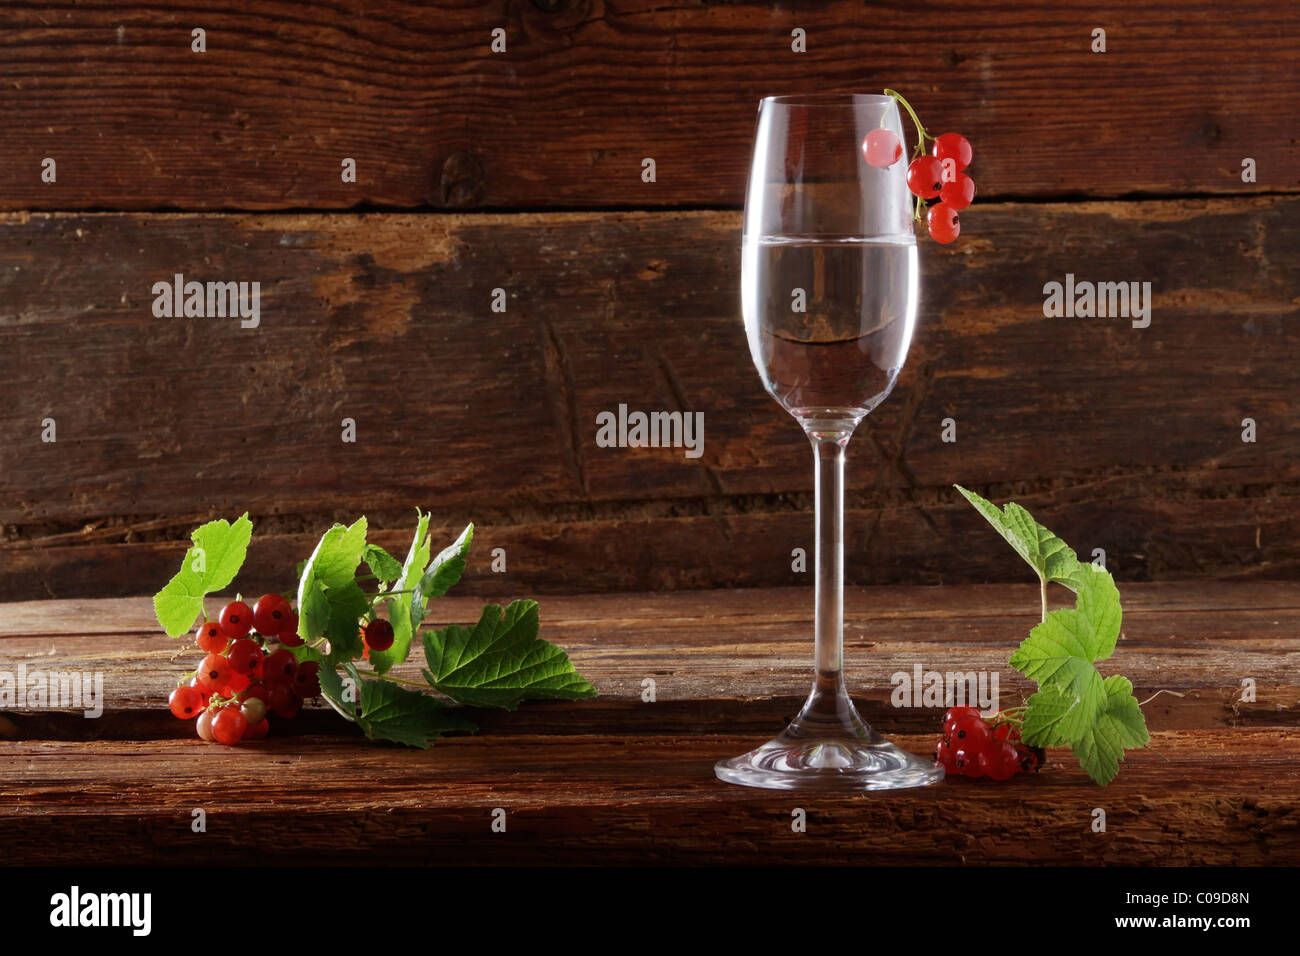 Un verre de schnaps avec groseille Groseilles rouges (Ribes rubrum) sur fond de bois Banque D'Images